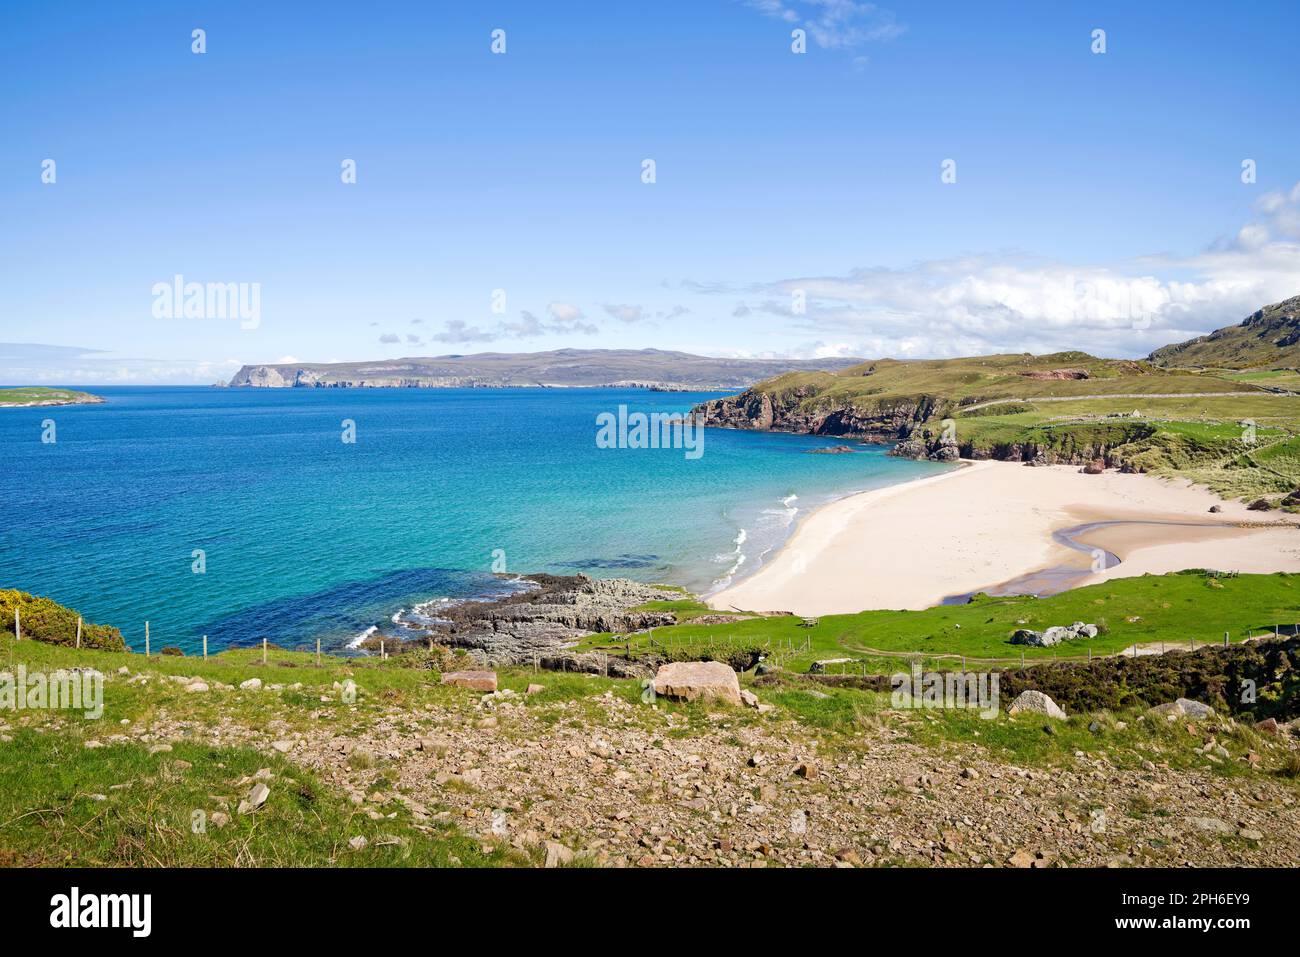 Vue sur la plage de Sangobeg, Durness, North Coast, Sutherland, de l'autre côté de la mer bleue calme jusqu'à Whiten Head, au loin, sur le côté lointain du Loch Eriboll. Banque D'Images